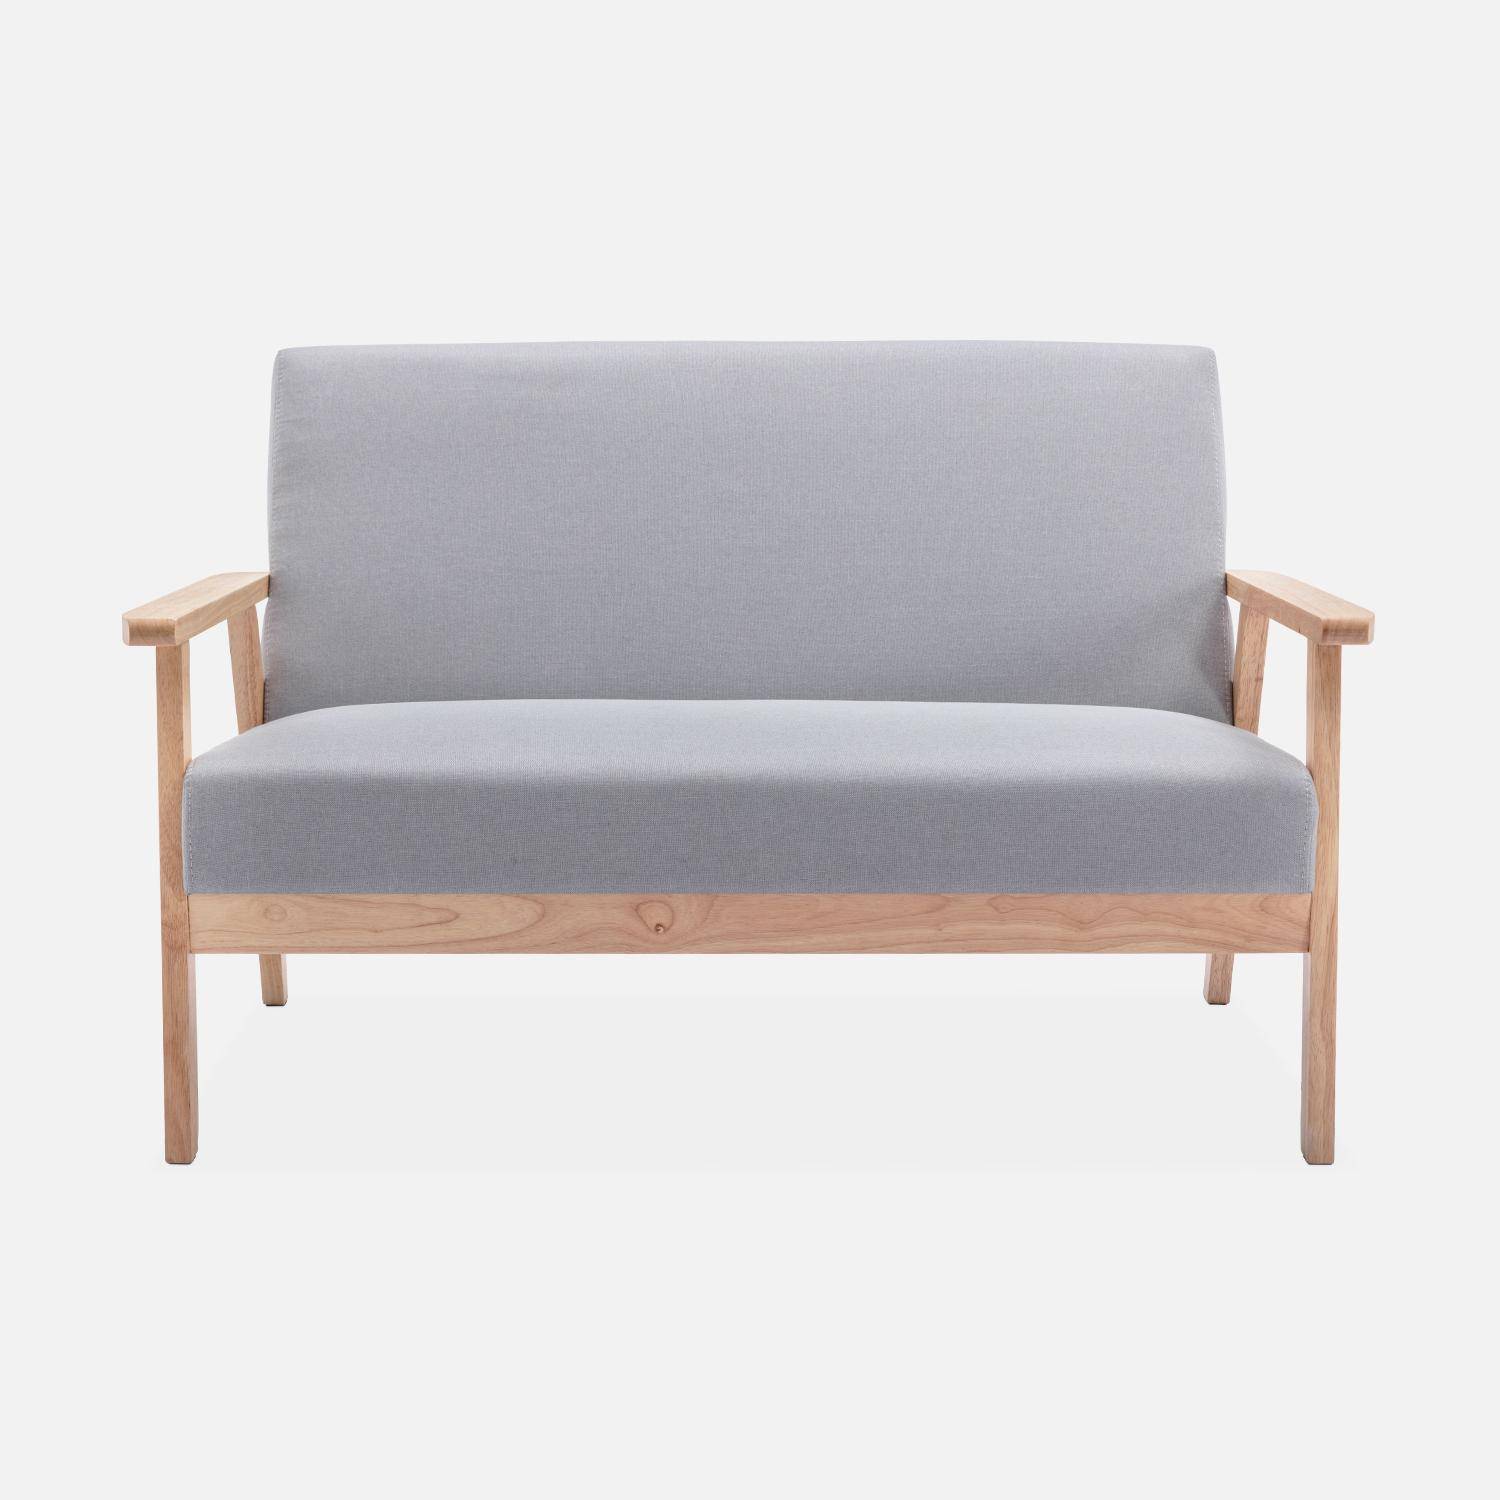 Banquette et fauteuil en bois et tissu gris clair, Isak, L 114 x l 69,5 x H 73cm Photo4